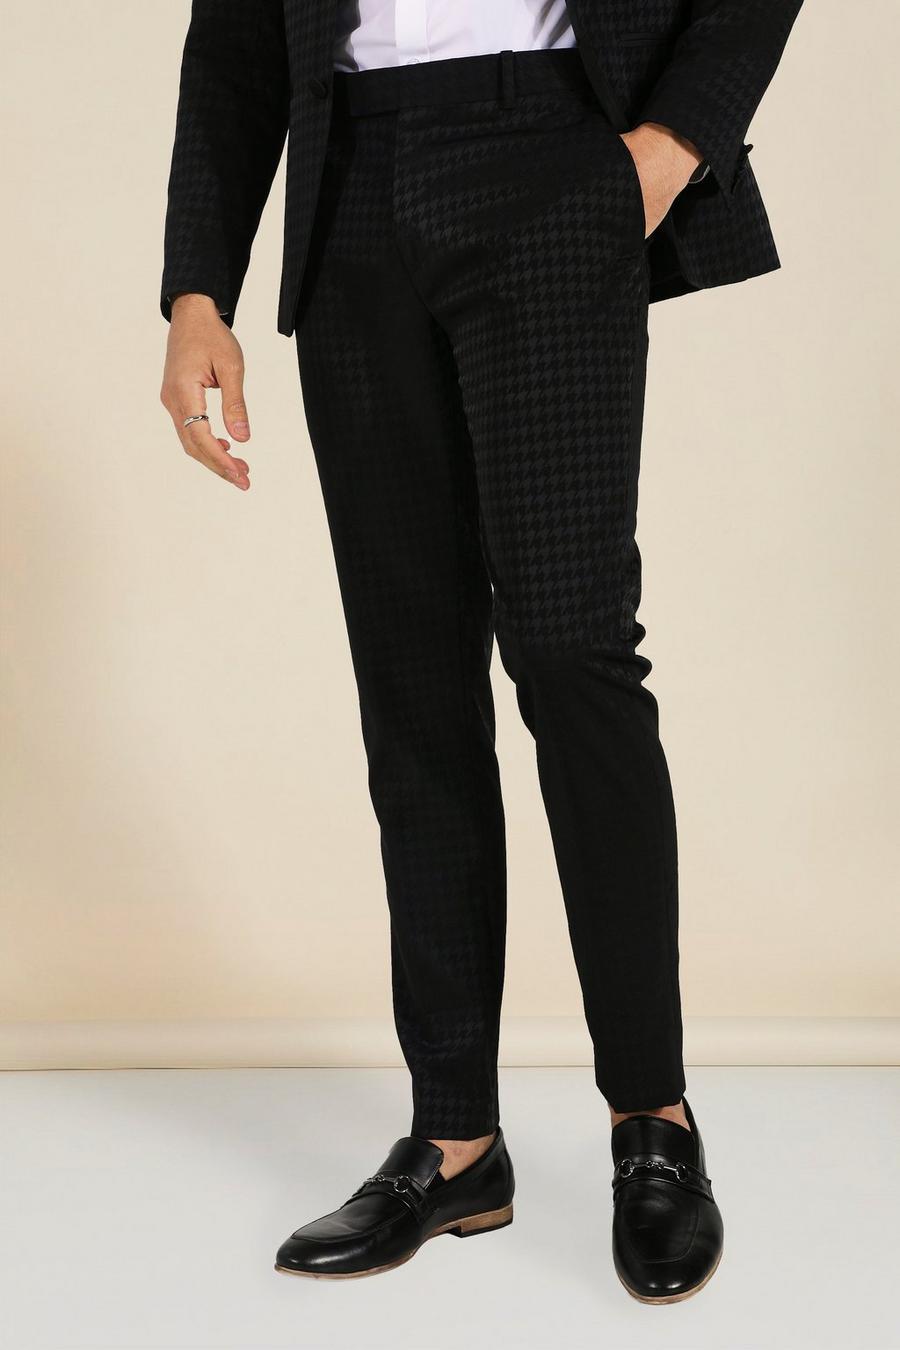 שחור negro מכנסי סקיני עם הדפס משבצות משוננות בשני צבעים 